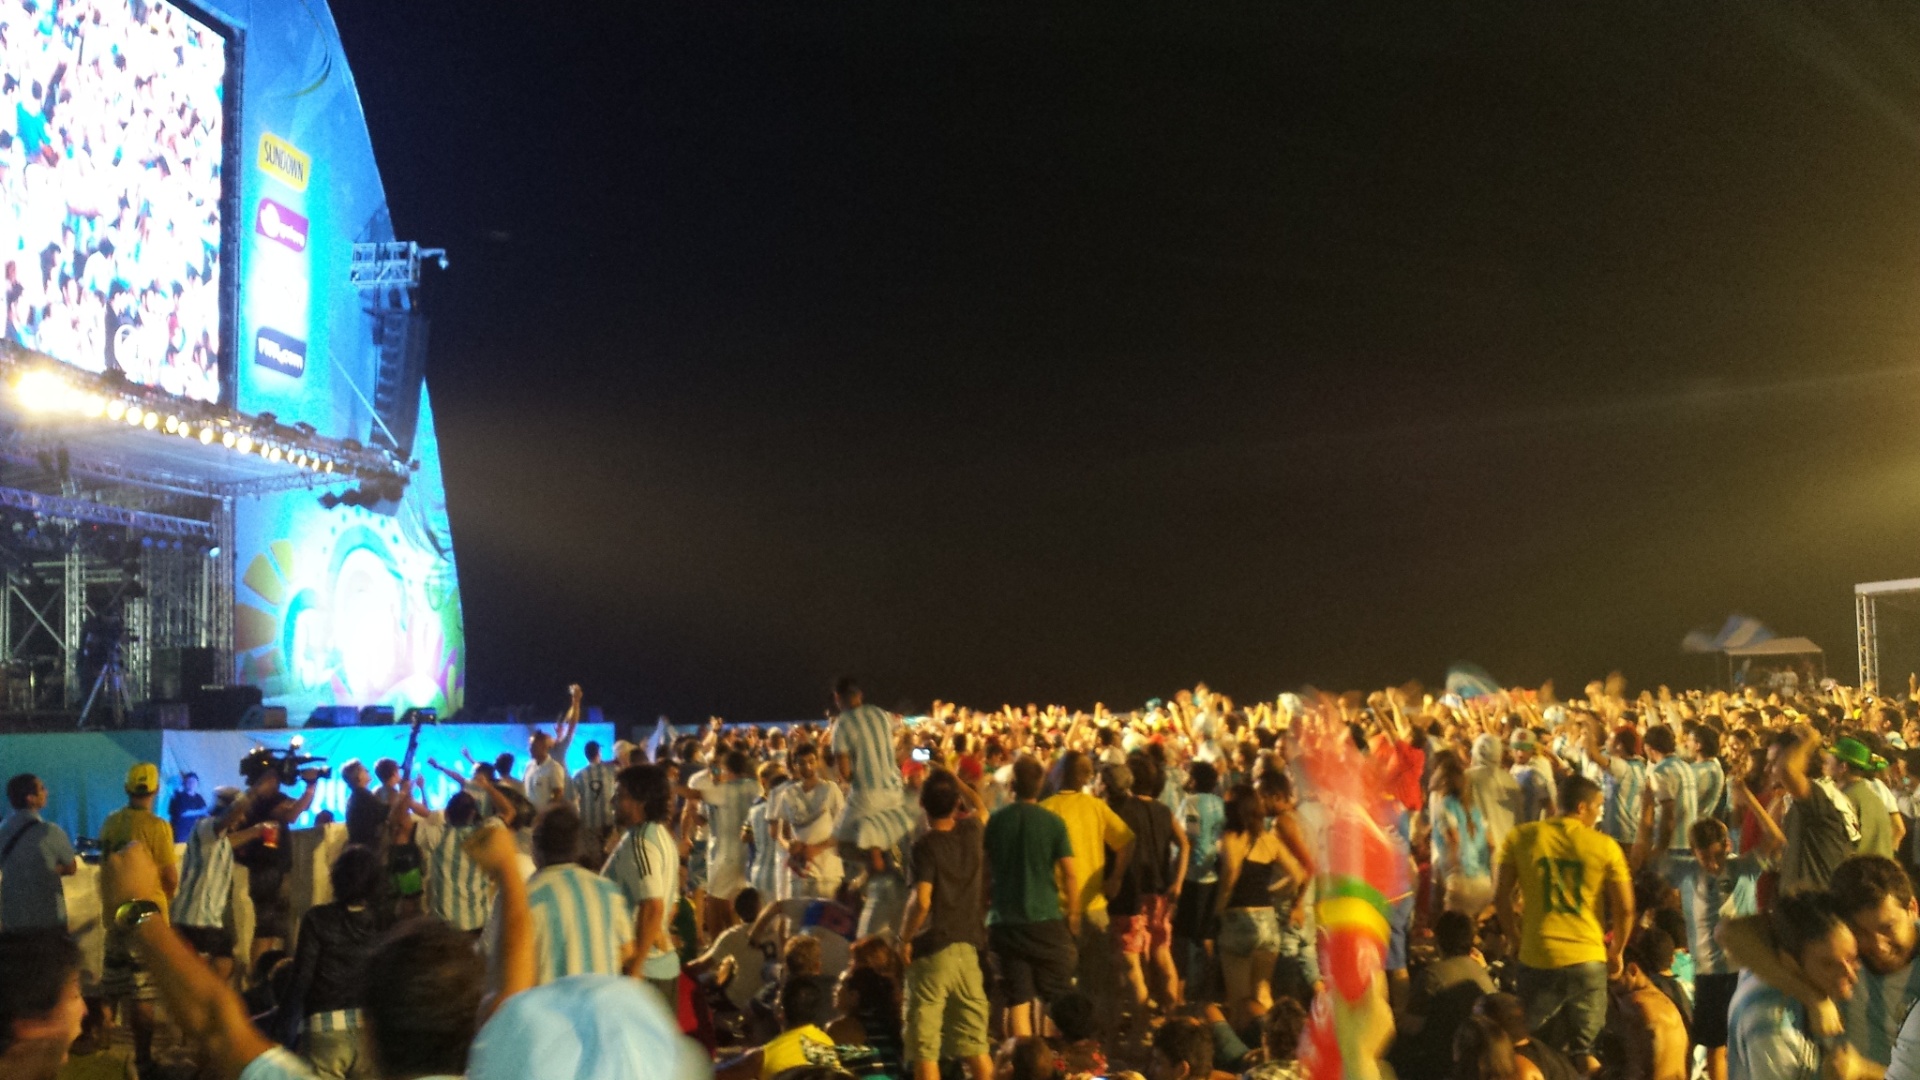 15.jun.2014 - Torcedores da Argentina explodem de alegria em Fan Fest do Rio de Janeiro após gol de Messi 